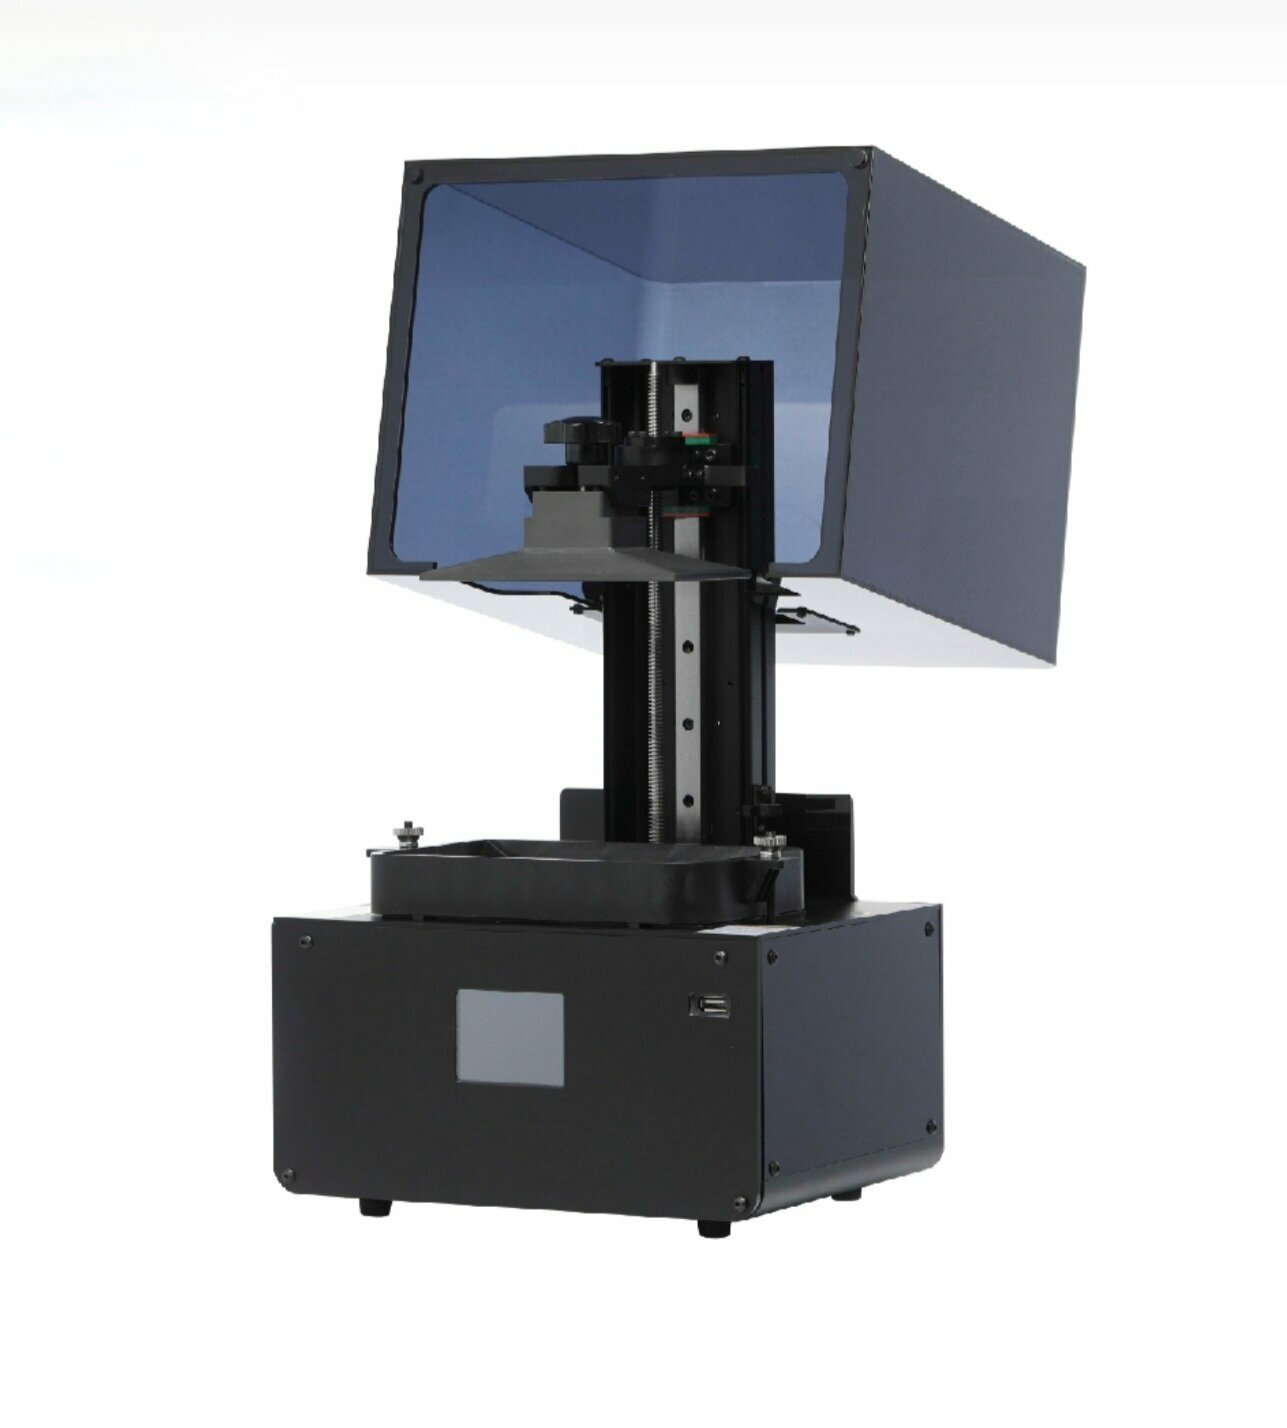 Принтер 3D Rich-opto HT580 c ЖК дисплеем. Высокоточный, светочувствительный 3D-принтер для DIY